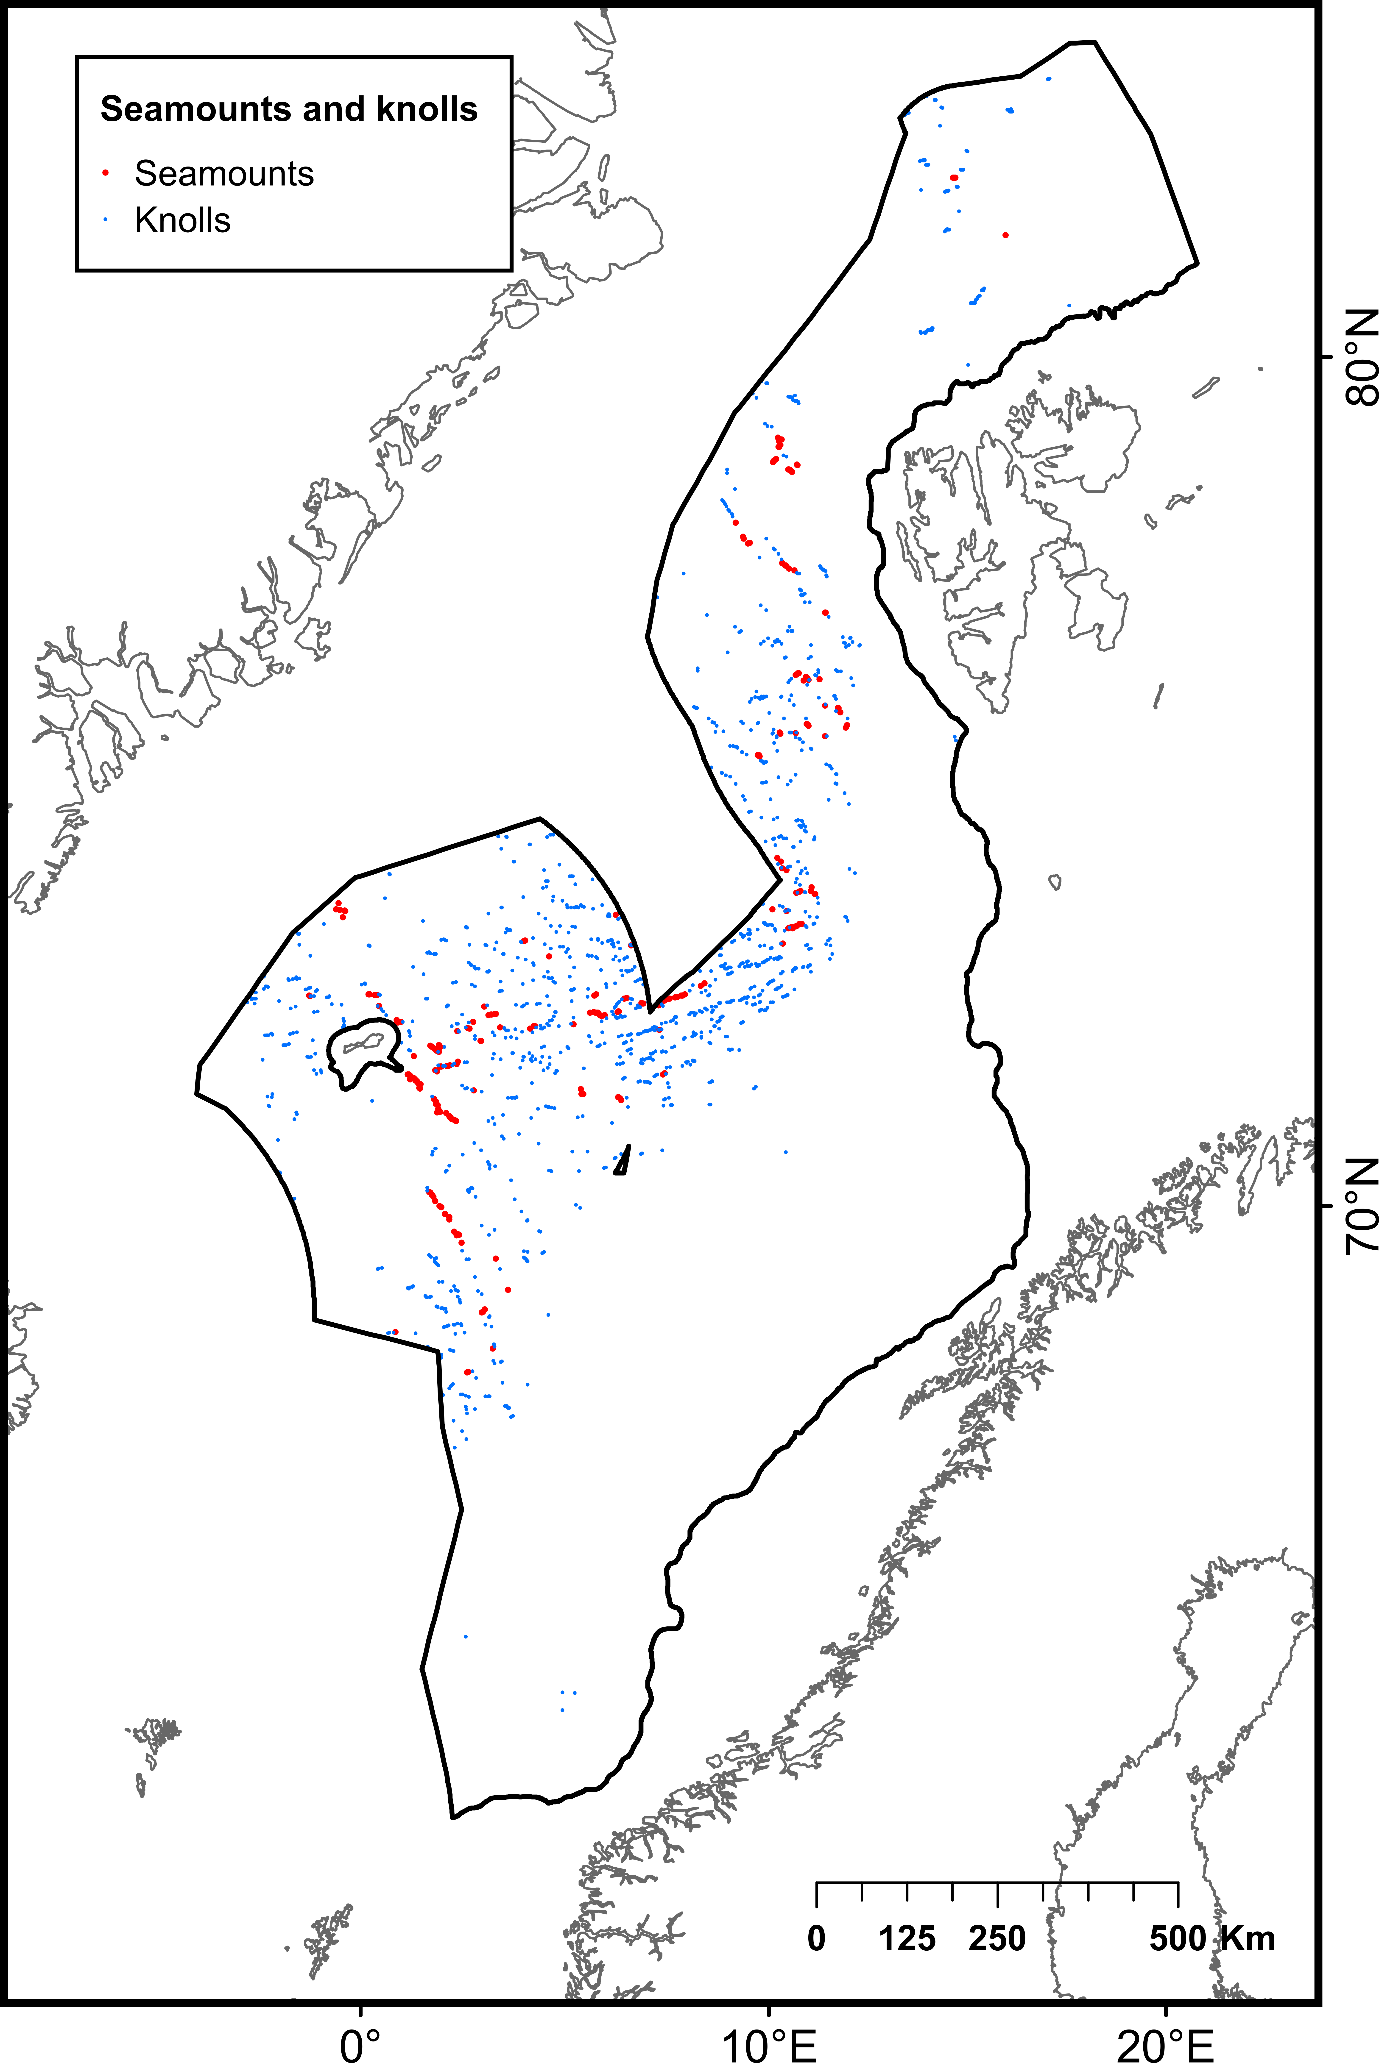 Red dots represent seamounts and blue dots represent knolls